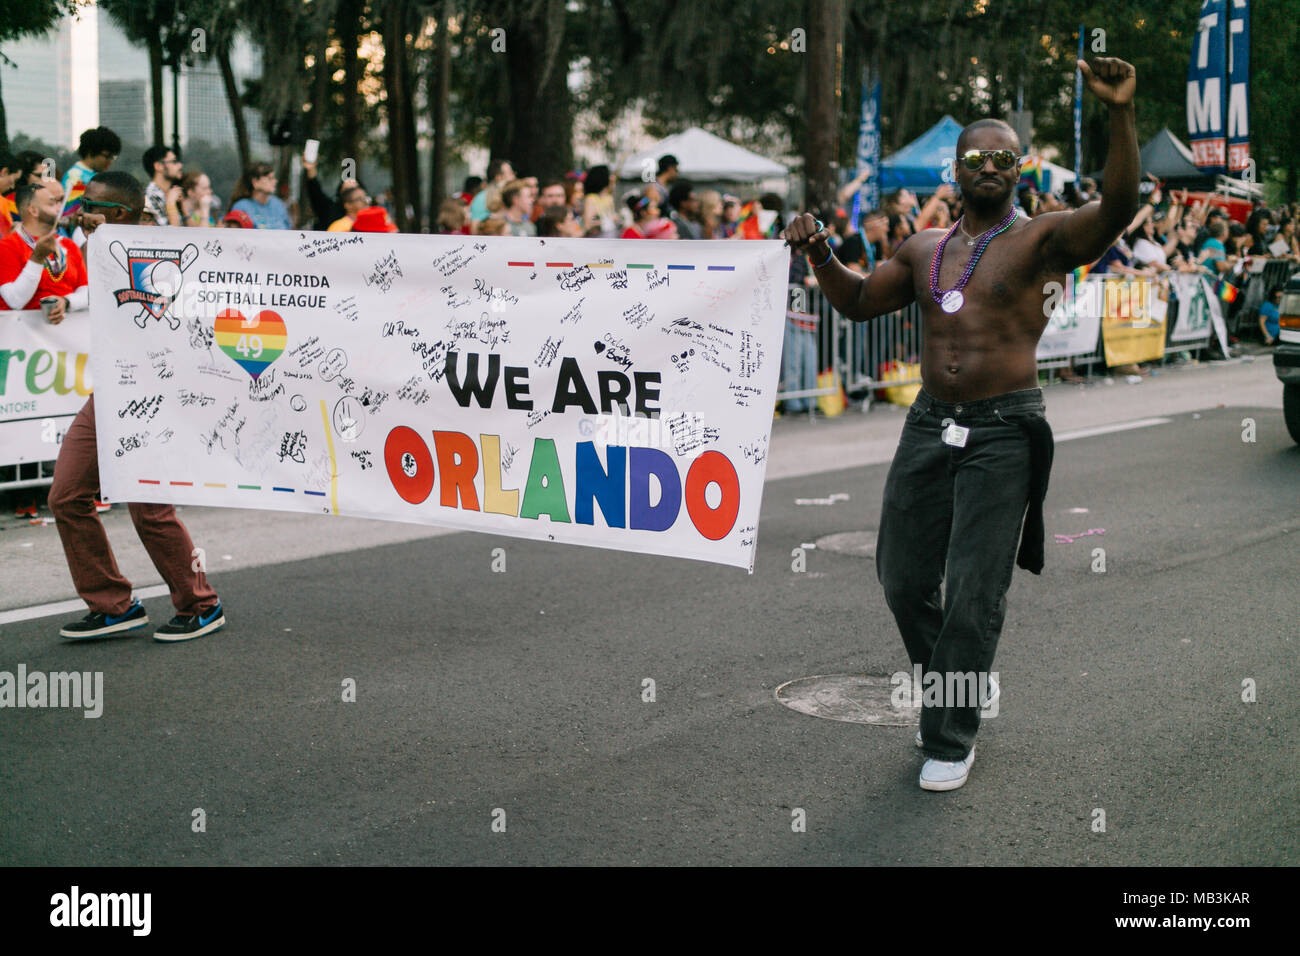 Central Florida Softball League at the Orlando Pride Parade (2016). Stock Photo